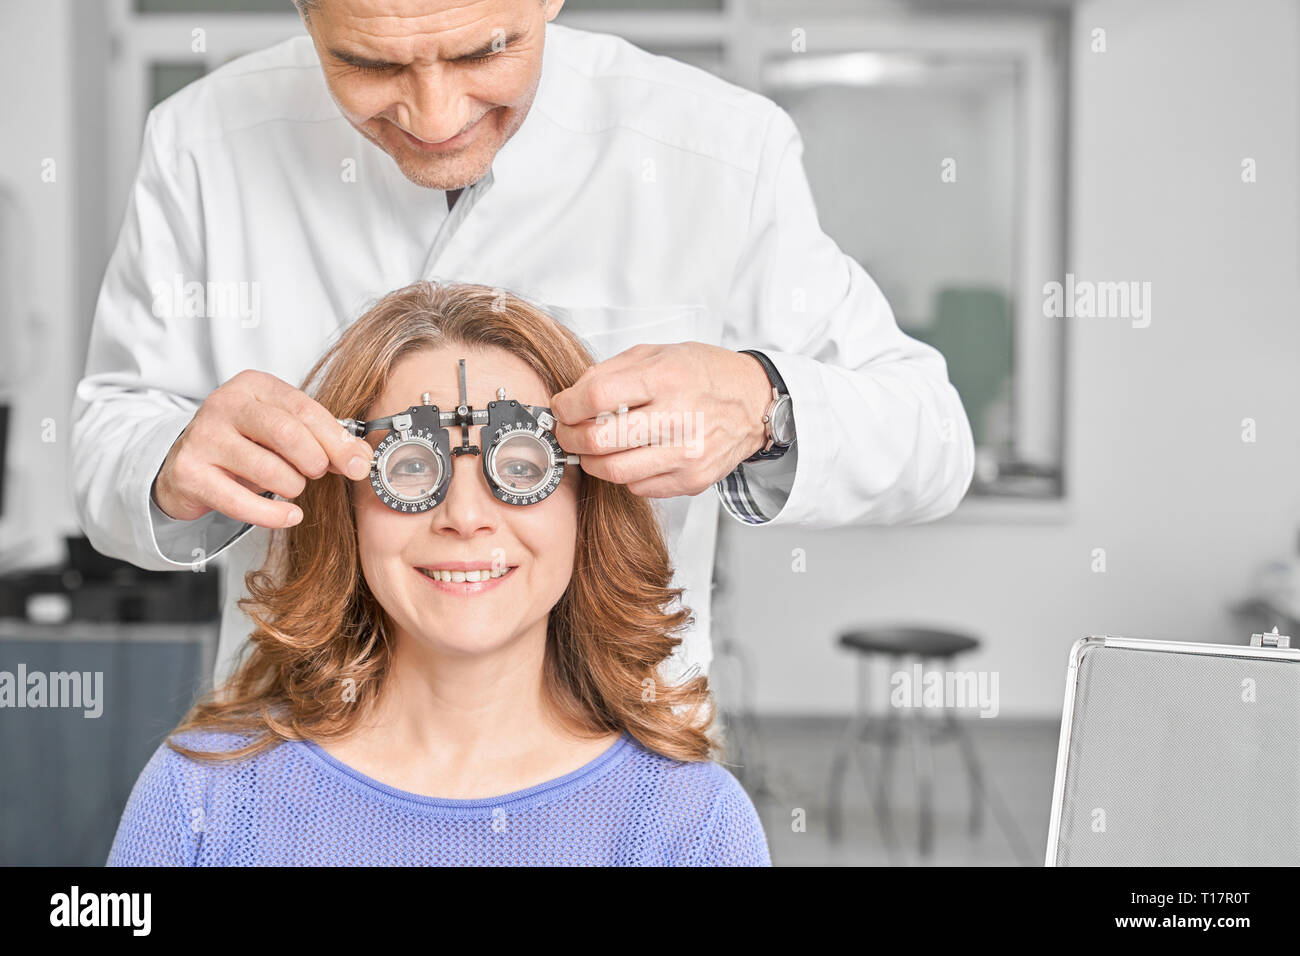 Médecin, spécialiste de l'œil l'examen de la vue du patient dans un centre. Ophtalmologiste professionnels titulaires d'un équipement, femme portant des lunettes d'essai. Concept de correction de la vue. Banque D'Images